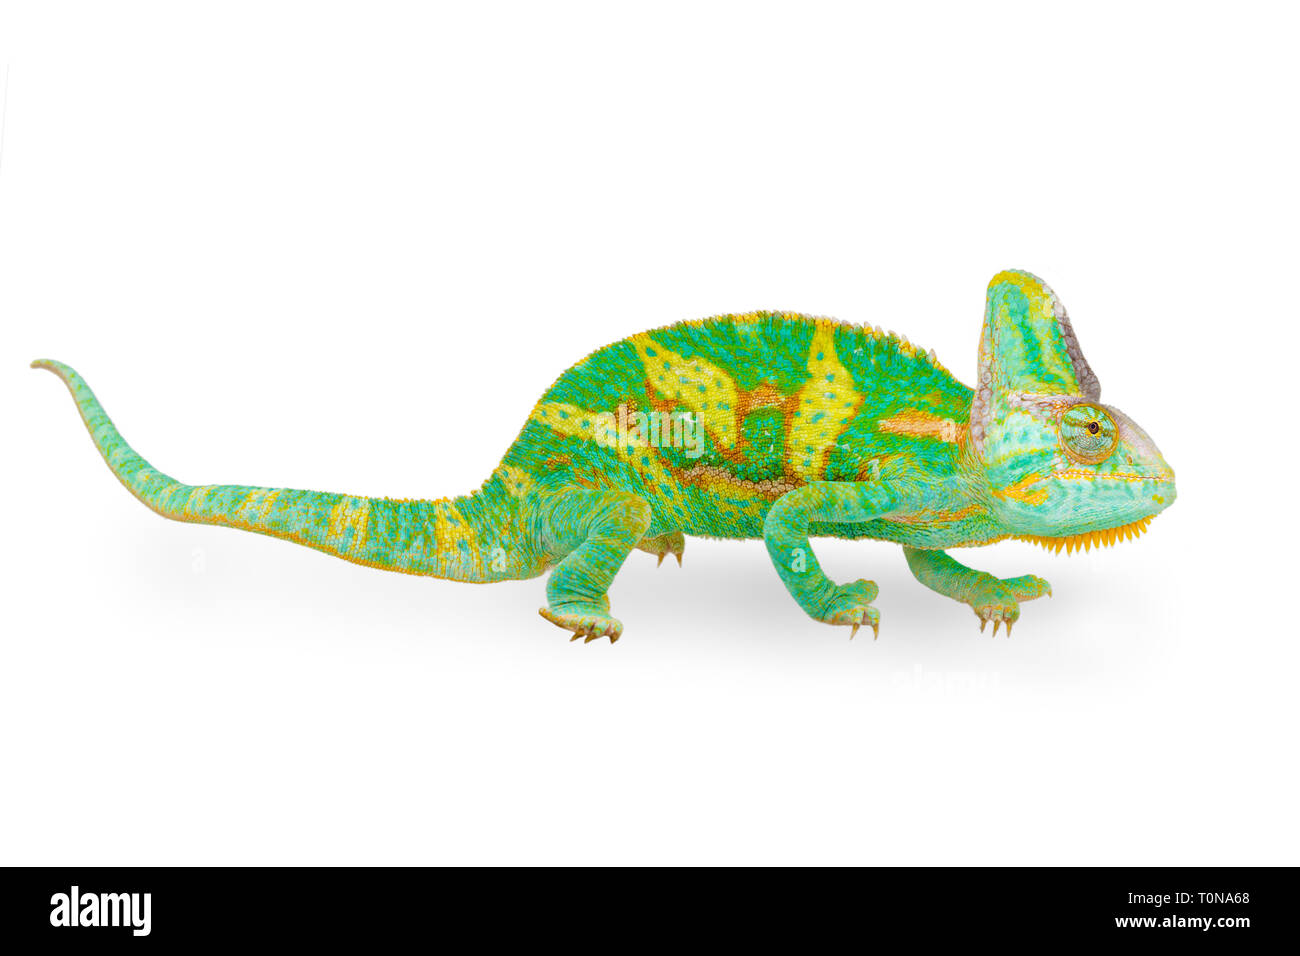 Chiudere la vista di un bel verde colorato chamaeleo calyptratus guardando in avanti. Specie chiamato anche velato, cono-testa o yemen chameleon. Foto Stock